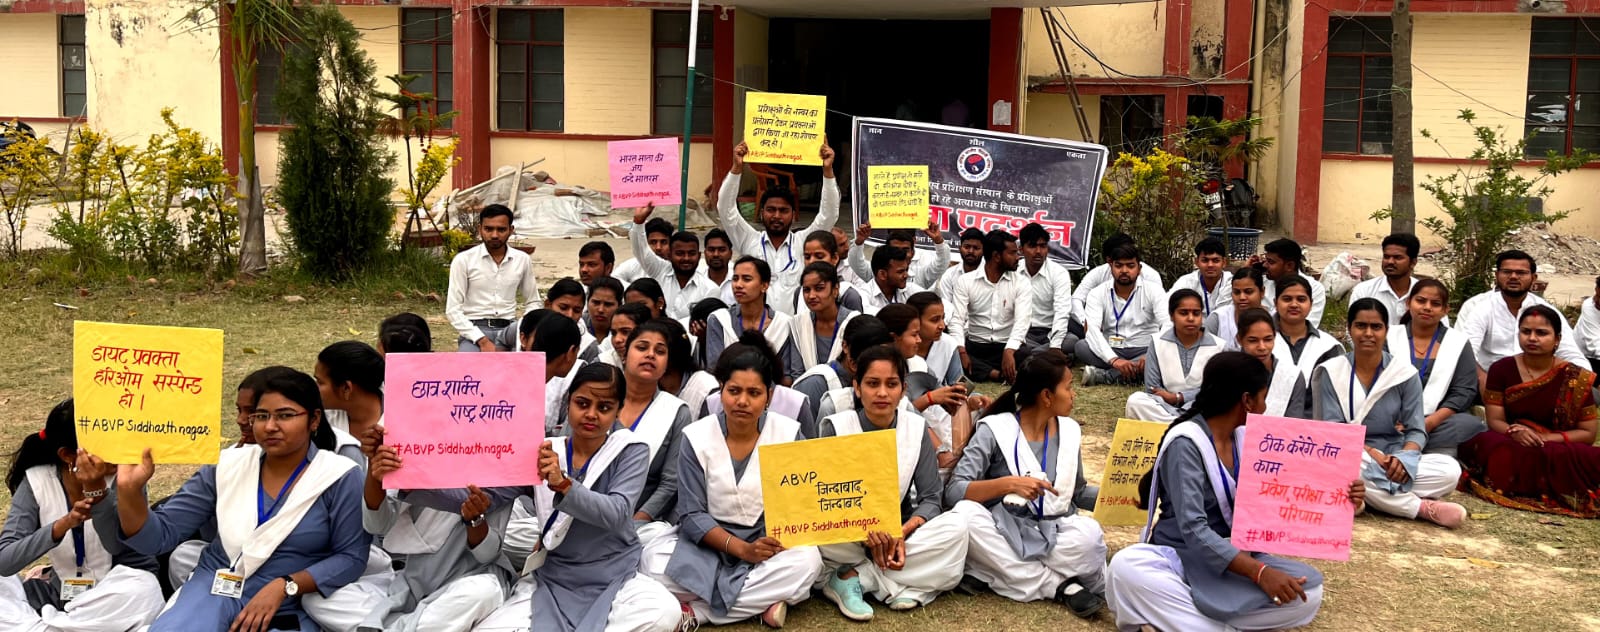 Vidyarthi Parishad staged a protest alleging corruption in Diet Basi